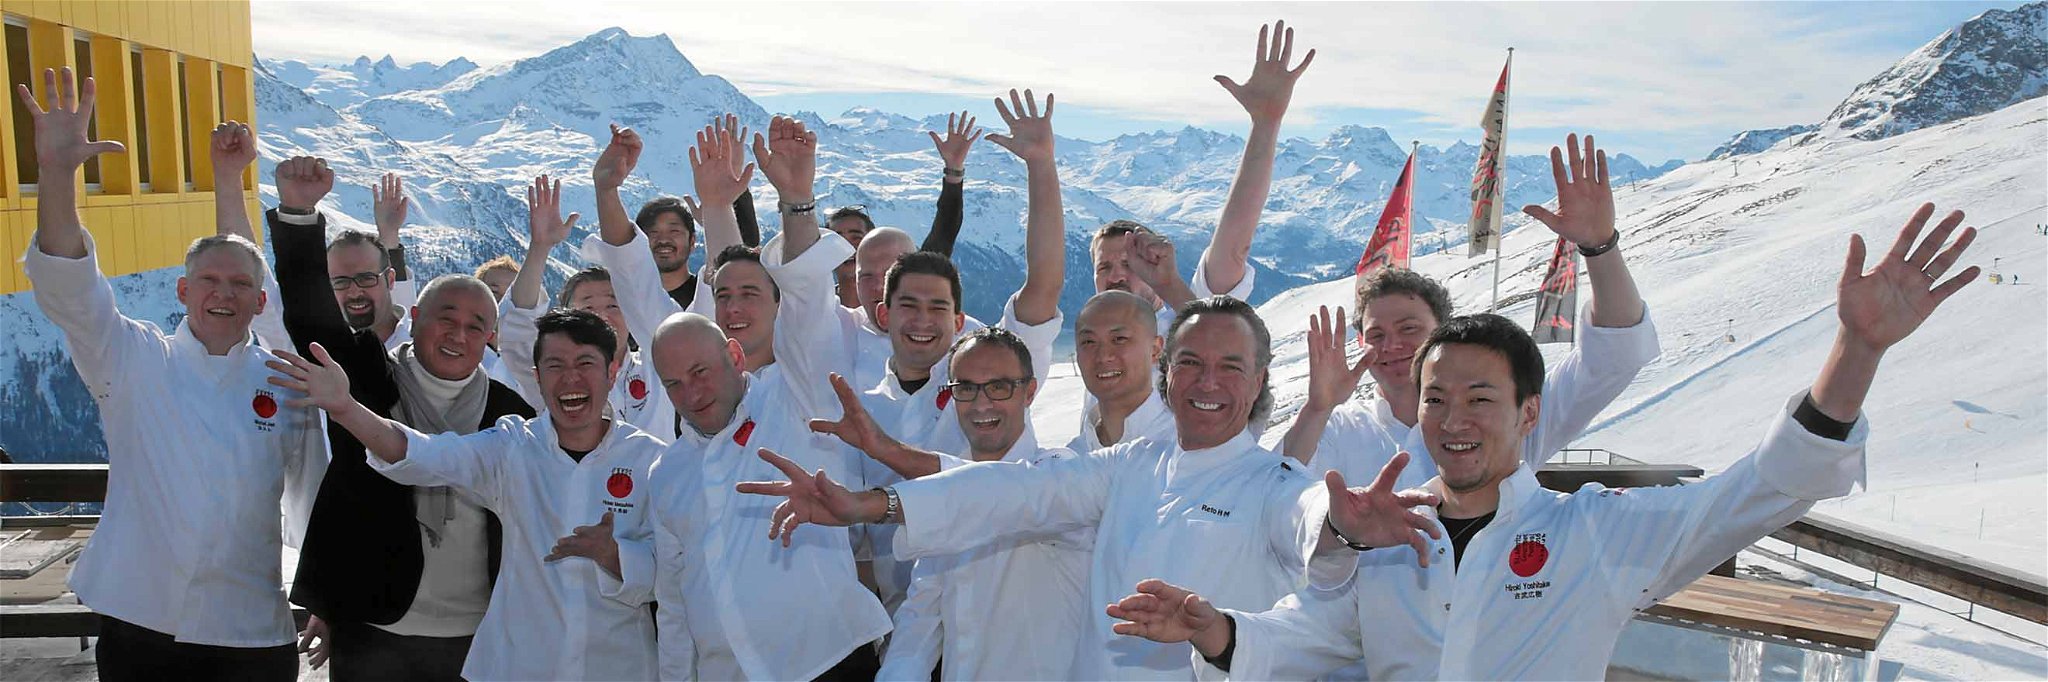 Symbolfoto: Das waren die Starköche des St. Moritz Gourmet Festivals 2016.